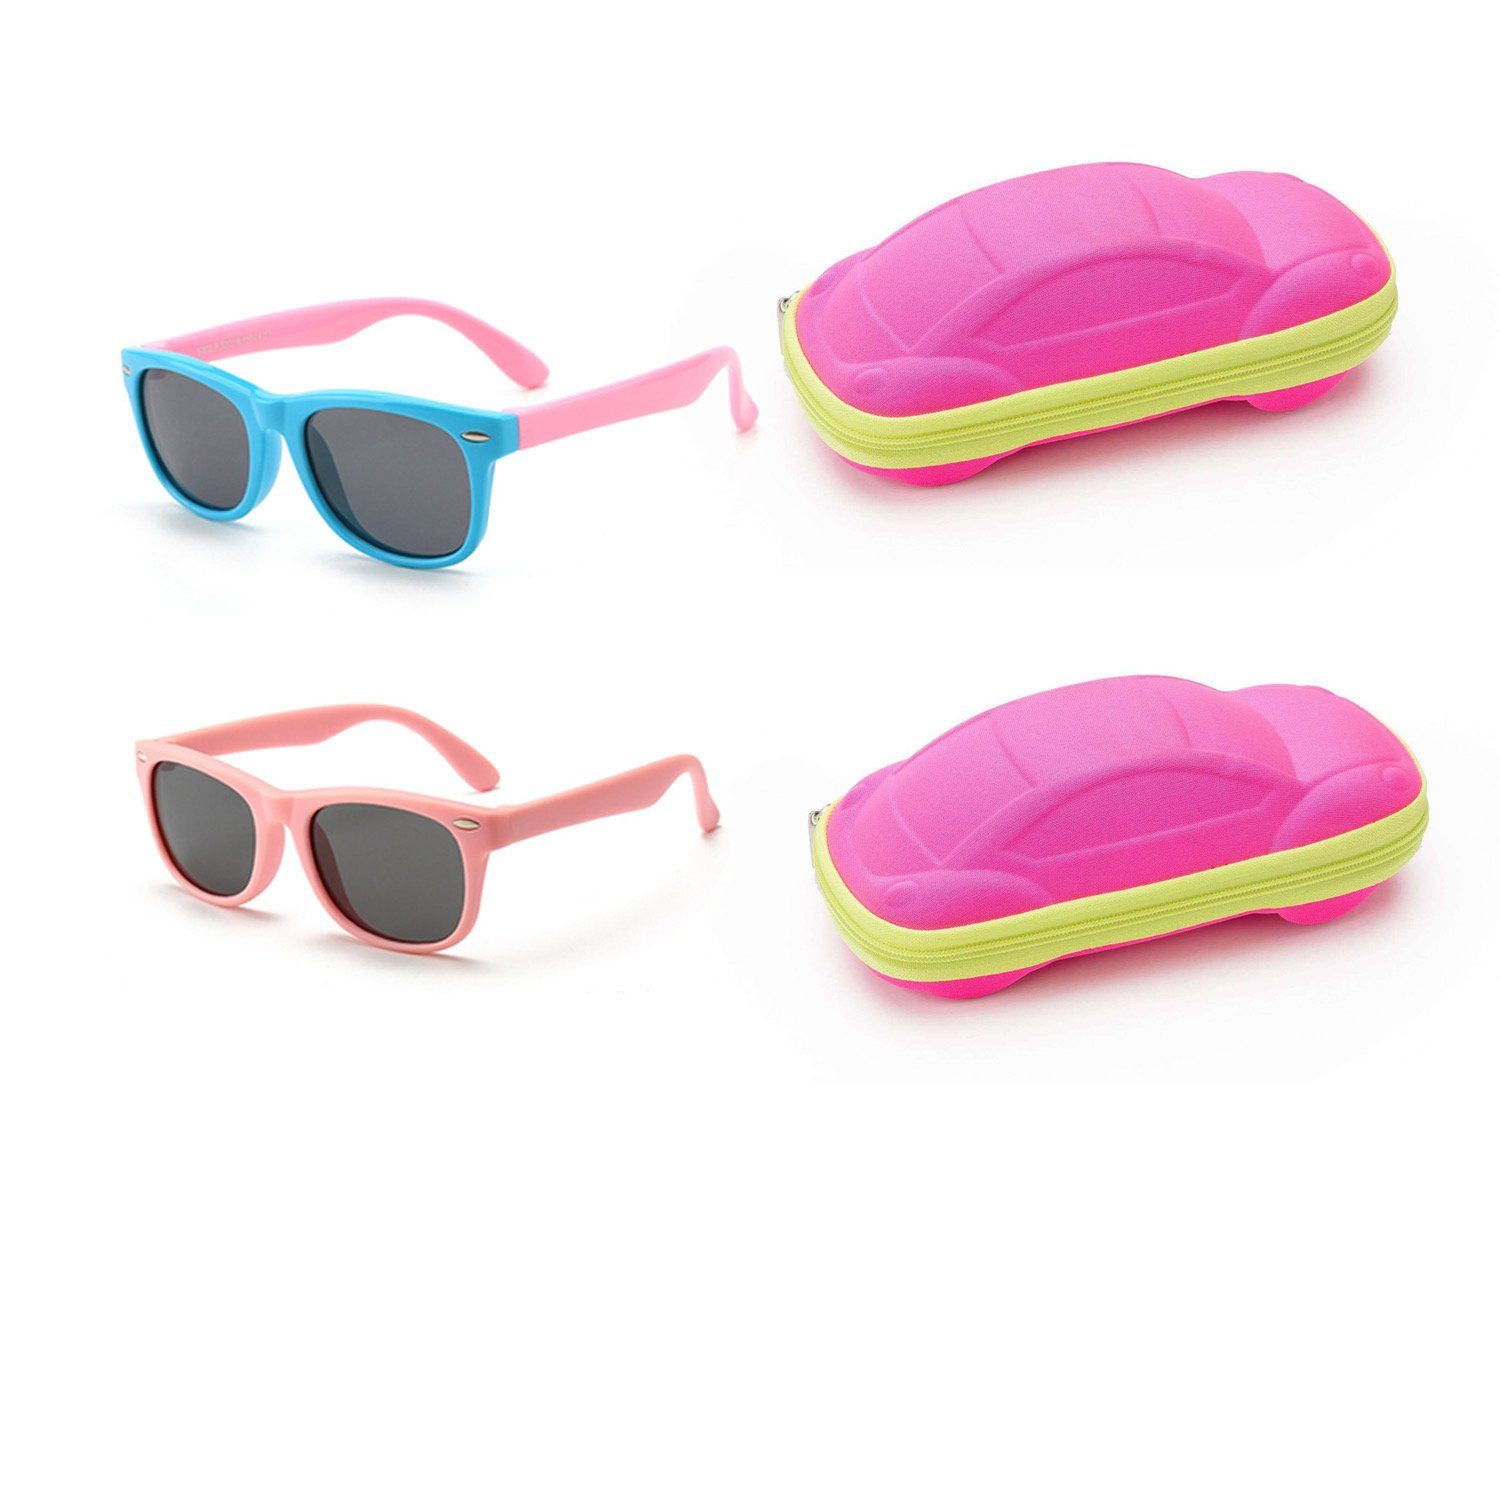 Olotos Sonnenbrille Sonnenbrille für Kinder Mädchen Jungen Gummi 100% UV400 Schutz Brille Hellblau+Rosa mit Brillenetui